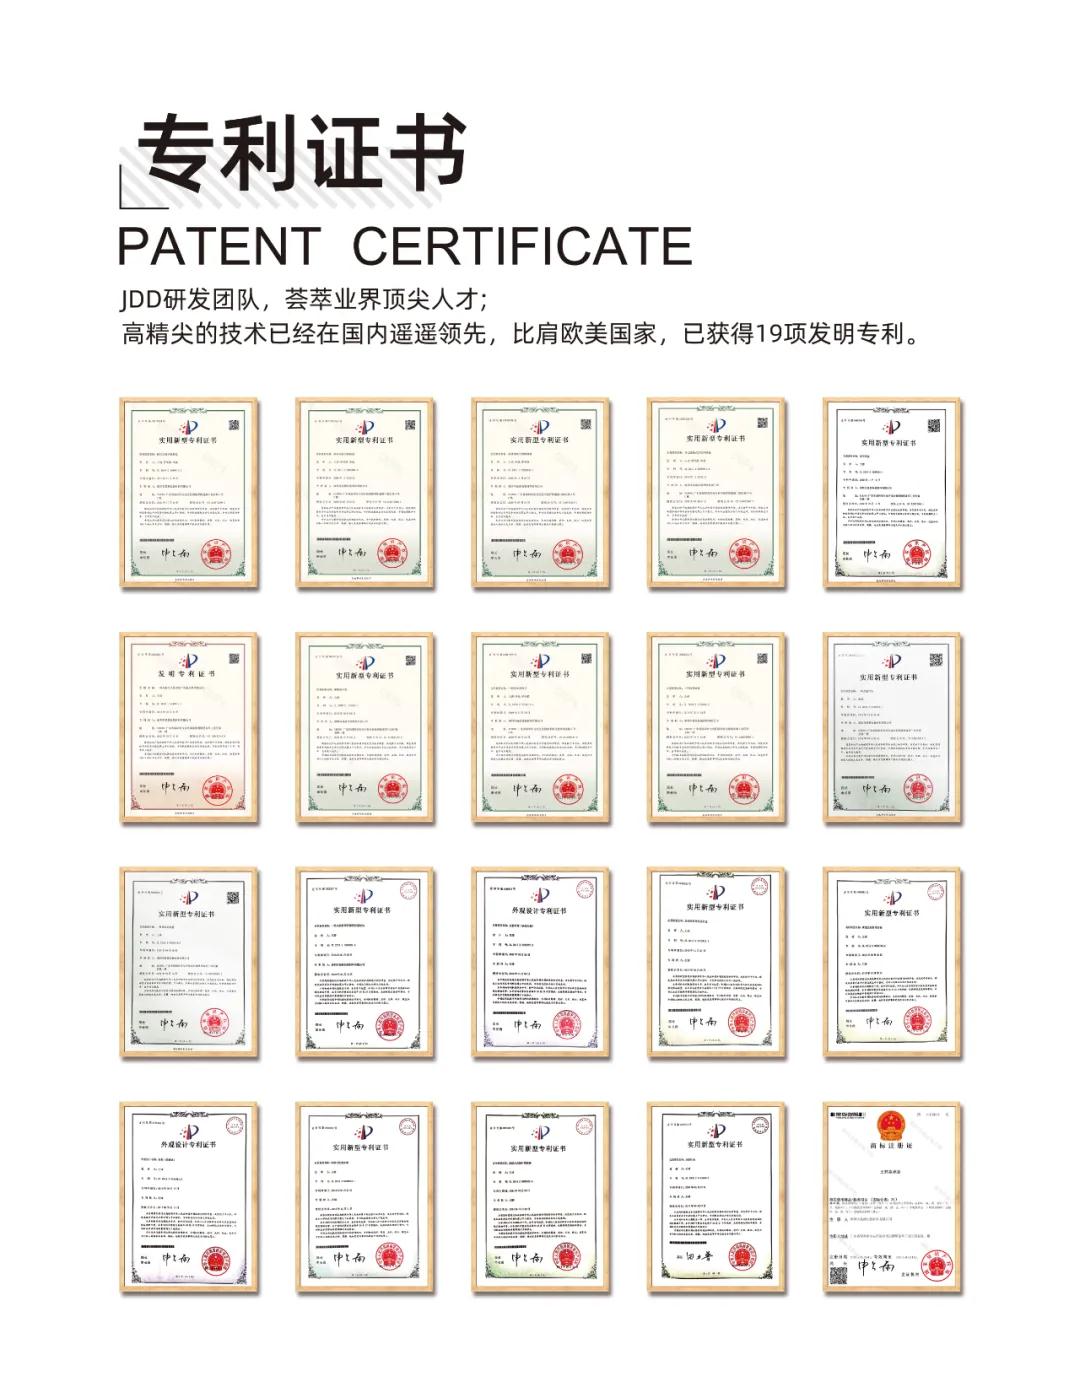 王鲜森潮盒专利证书